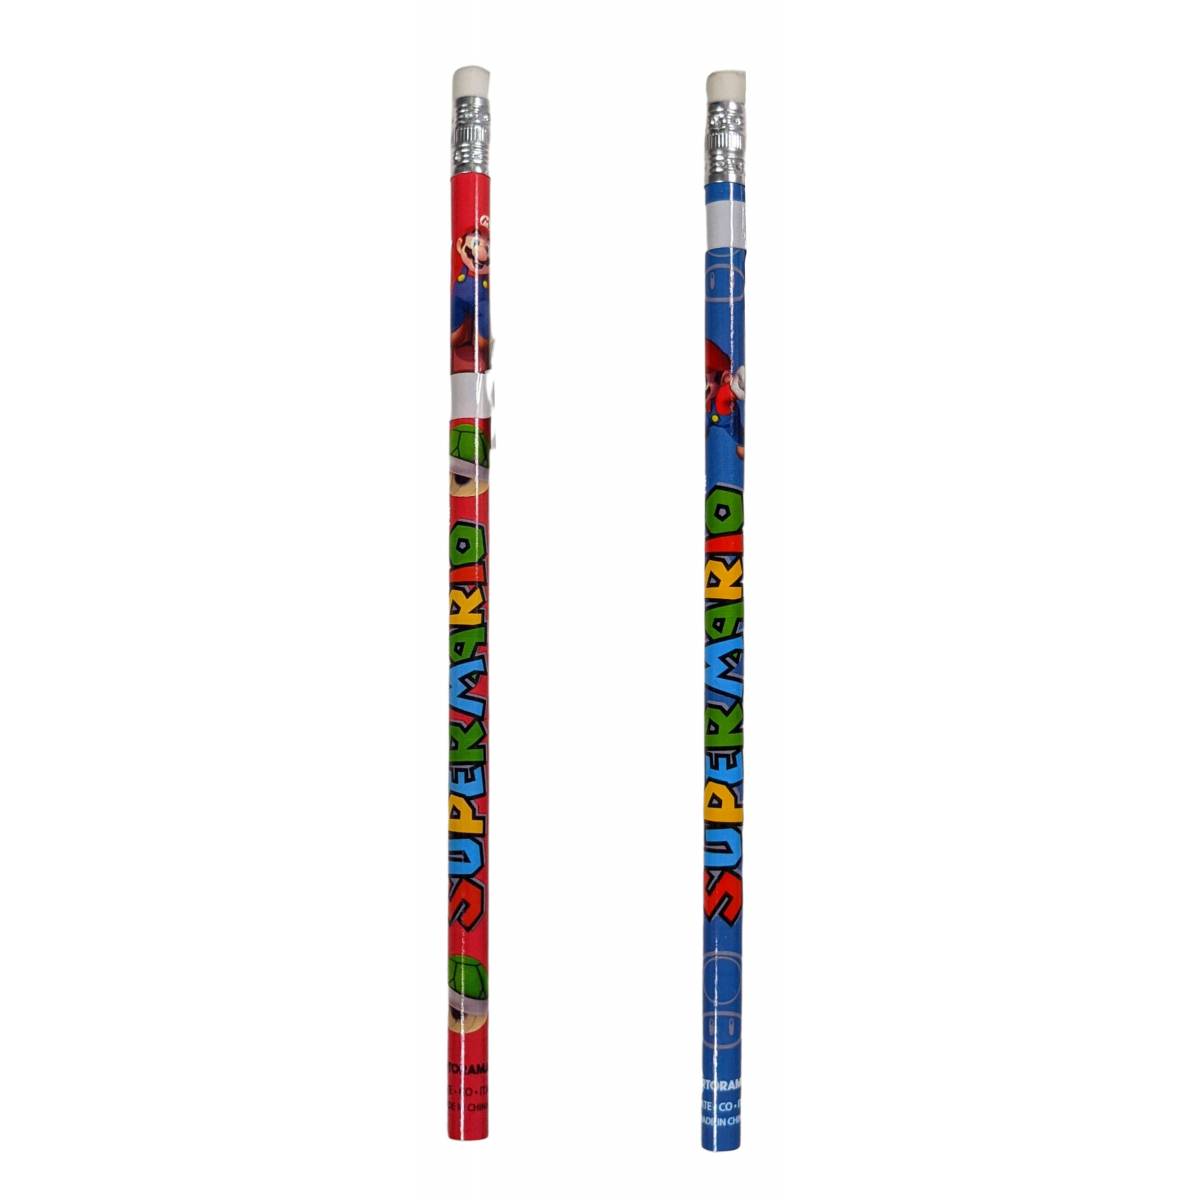 Super Mario pencils with eraser